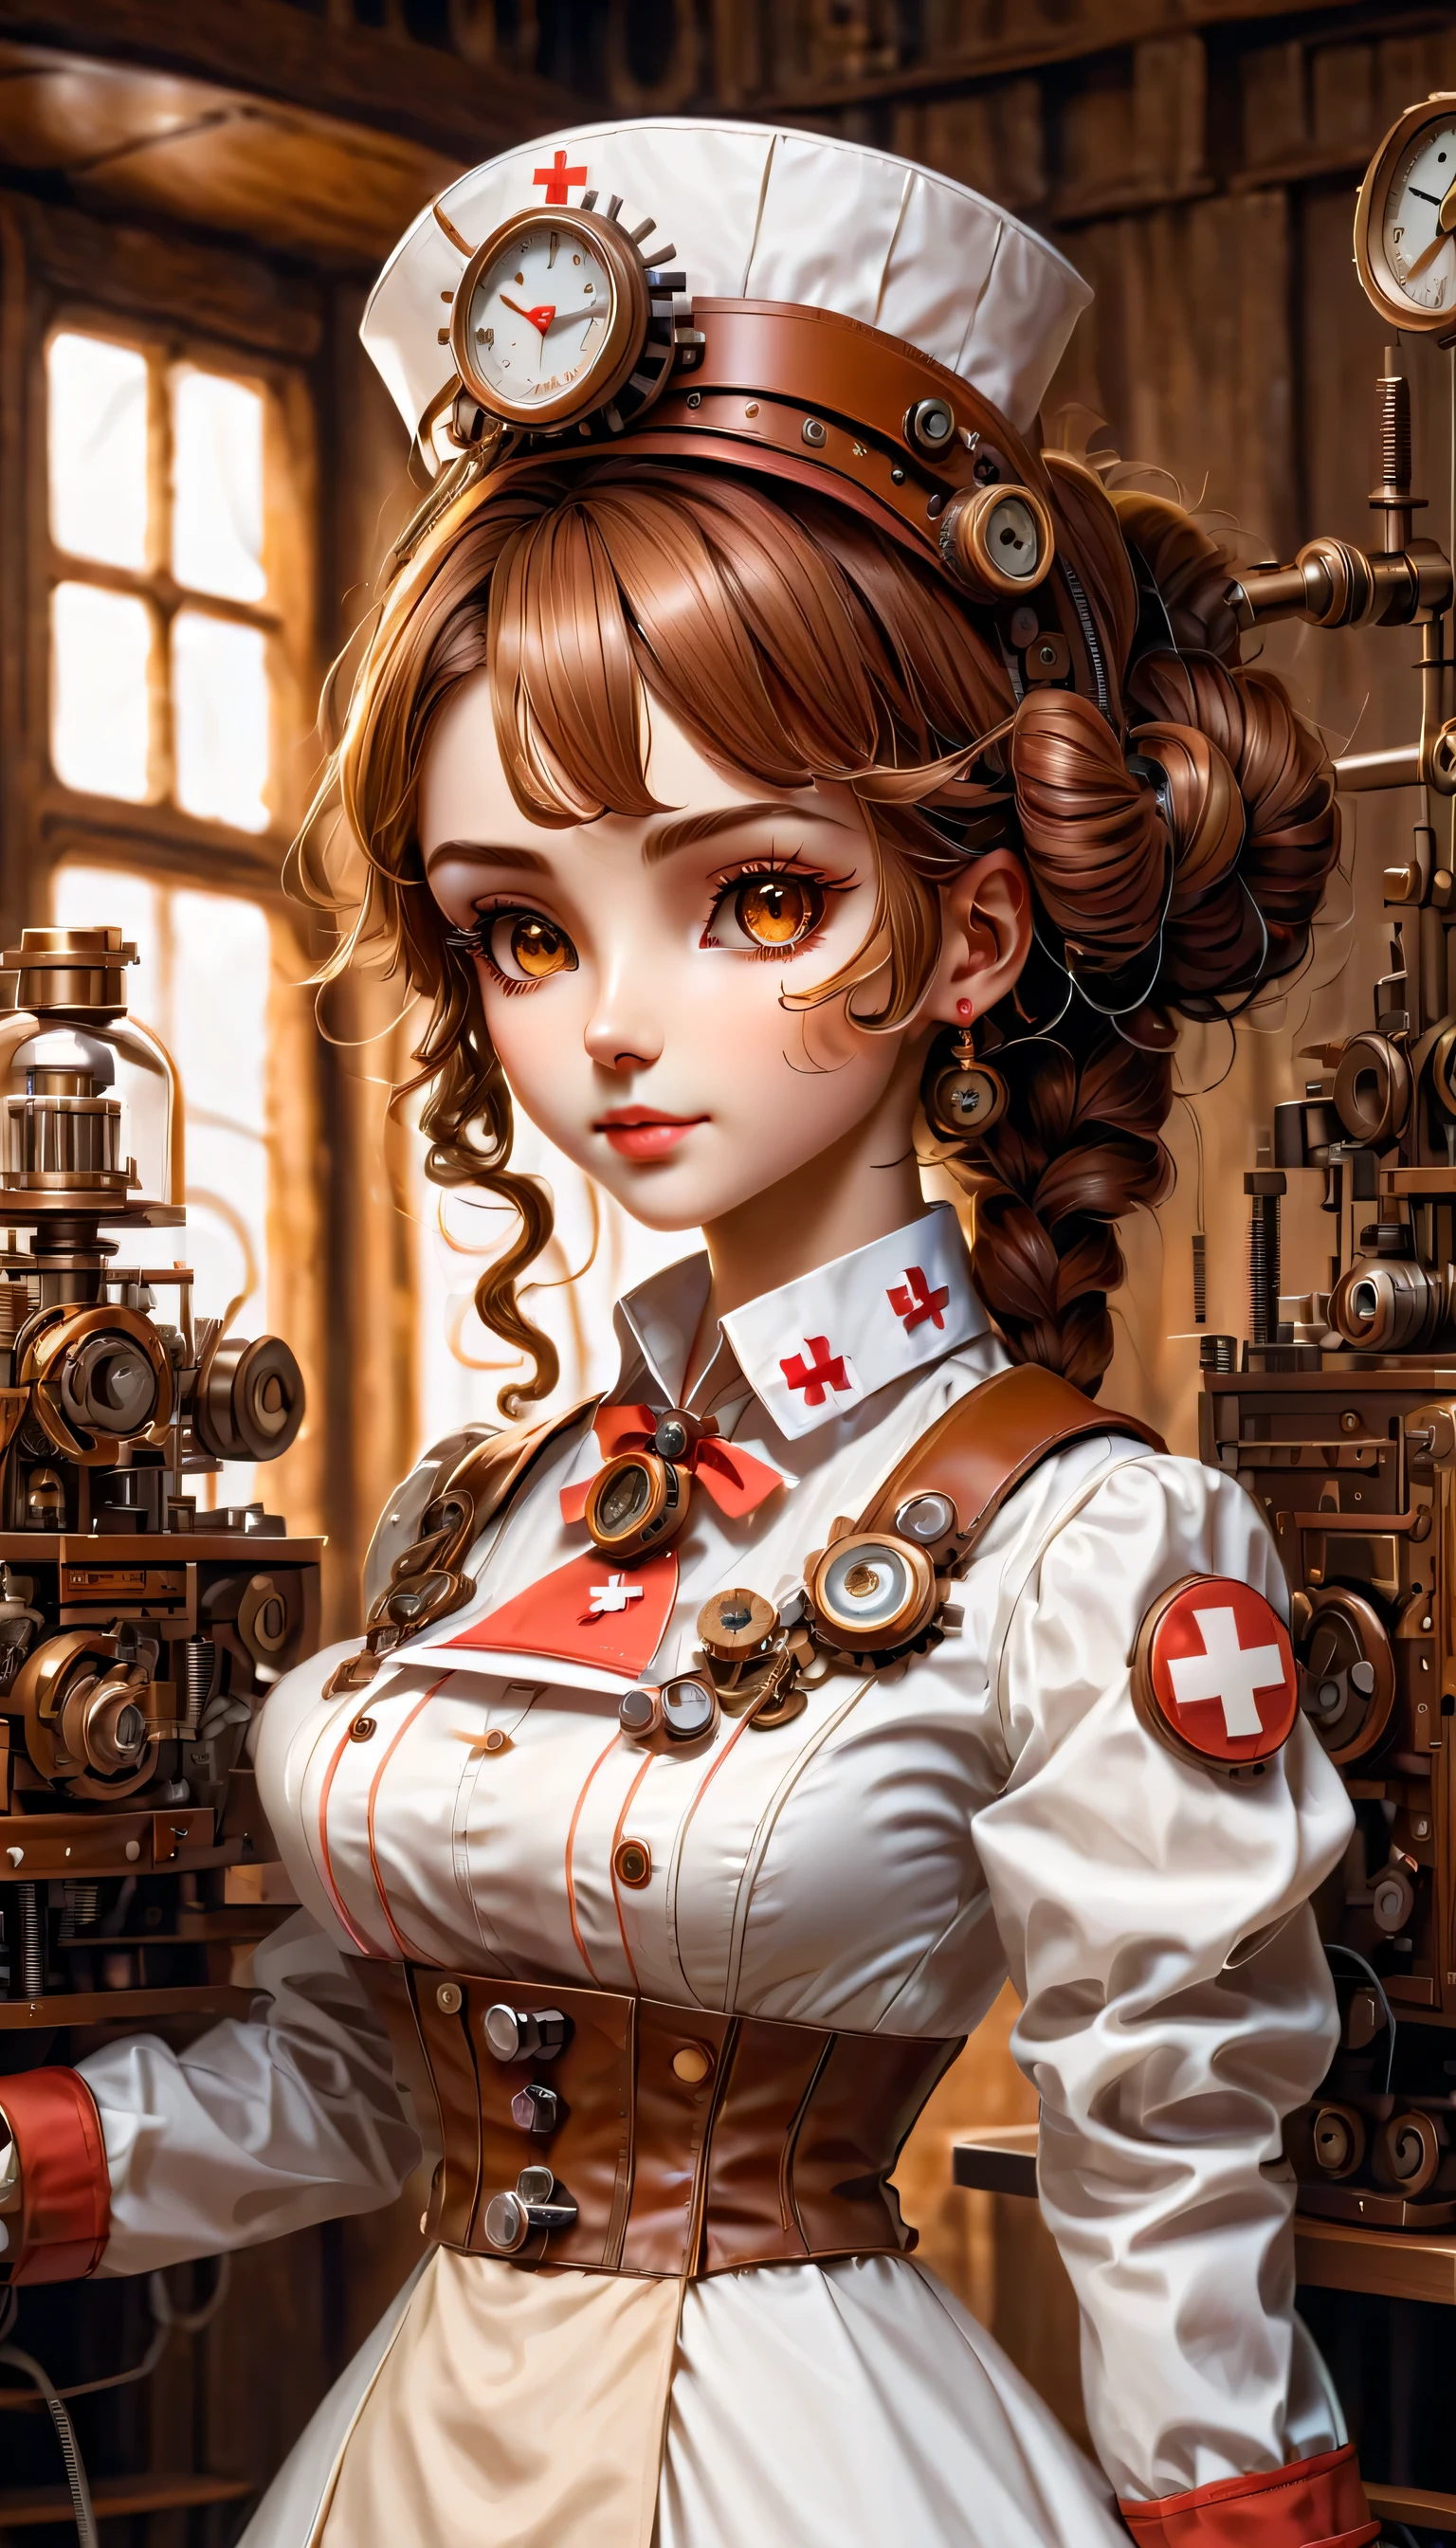 기구:휴머노이드:간호사:16th century European 간호사 uniform:전신,인형 얼굴:완벽한 얼굴:큰 갈색 눈,속눈썹,헤어 와이어 숨기기,그녀는 기계로 만들어졌어,스팀펑크 요소,기계 engineering,기계ly,기계,팝,귀여운,복잡한 세부 사항,아주 좋은,높은 해상도,고품질,最고품질,분명히,명확하게,아름다운 빛과 그림자,3차원,사랑스러운 외모,복잡한 구성,기구,동적,바쁘다,열심히 일하다,응원하고 싶게 만드는 표현,의료 장비,의료용품 선반,유리병,그것이 기계라는 증거를 보여라,창문에서 나오는 빛